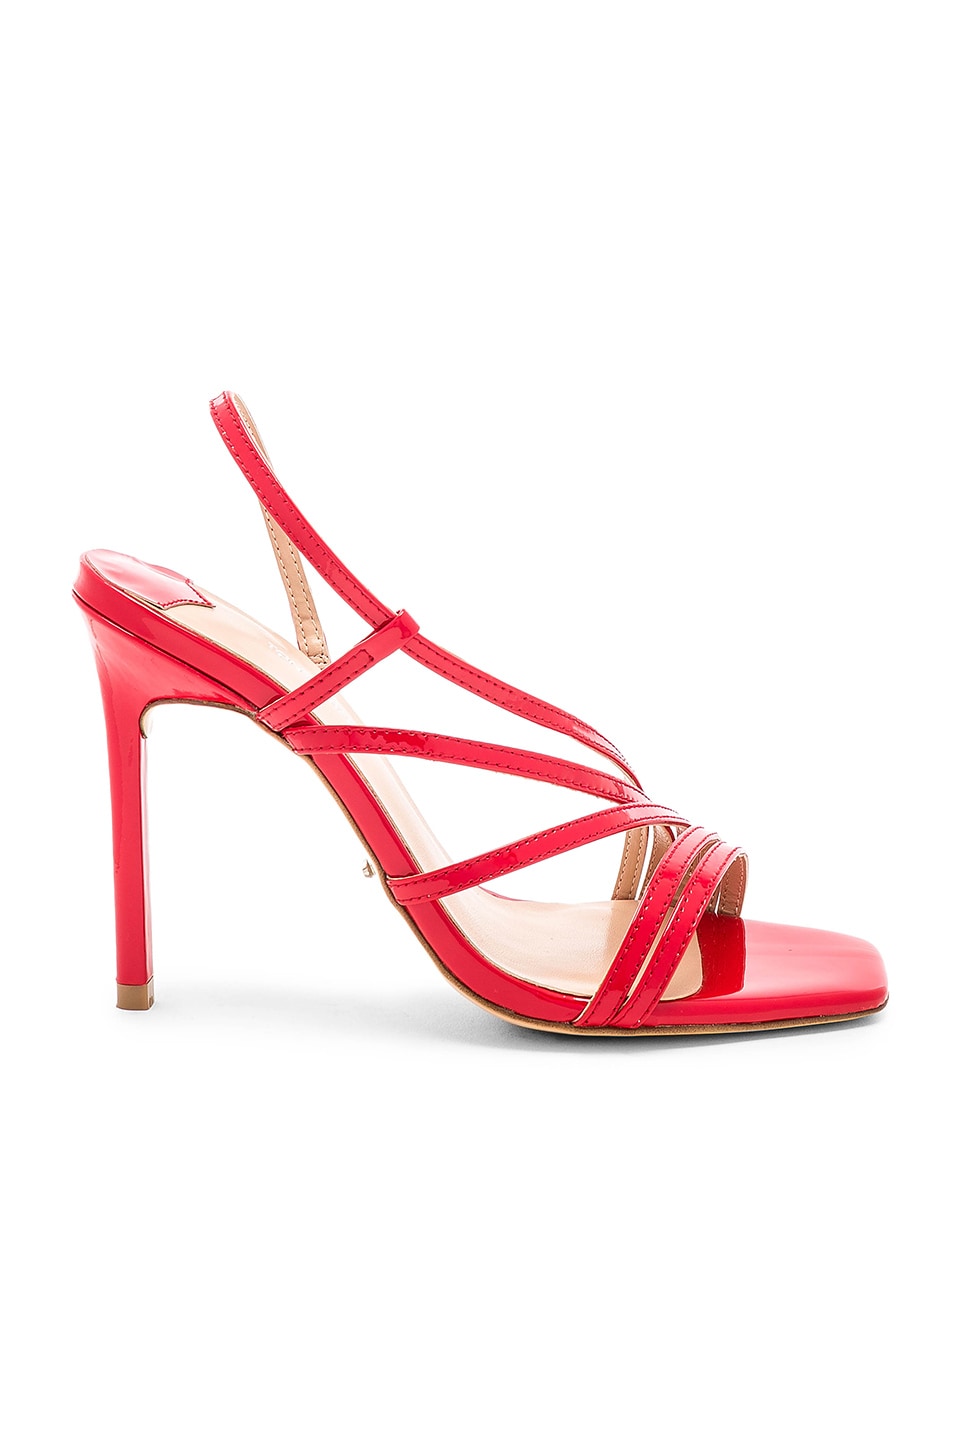 Tony Bianco Selena Heel in Red Patent | REVOLVE